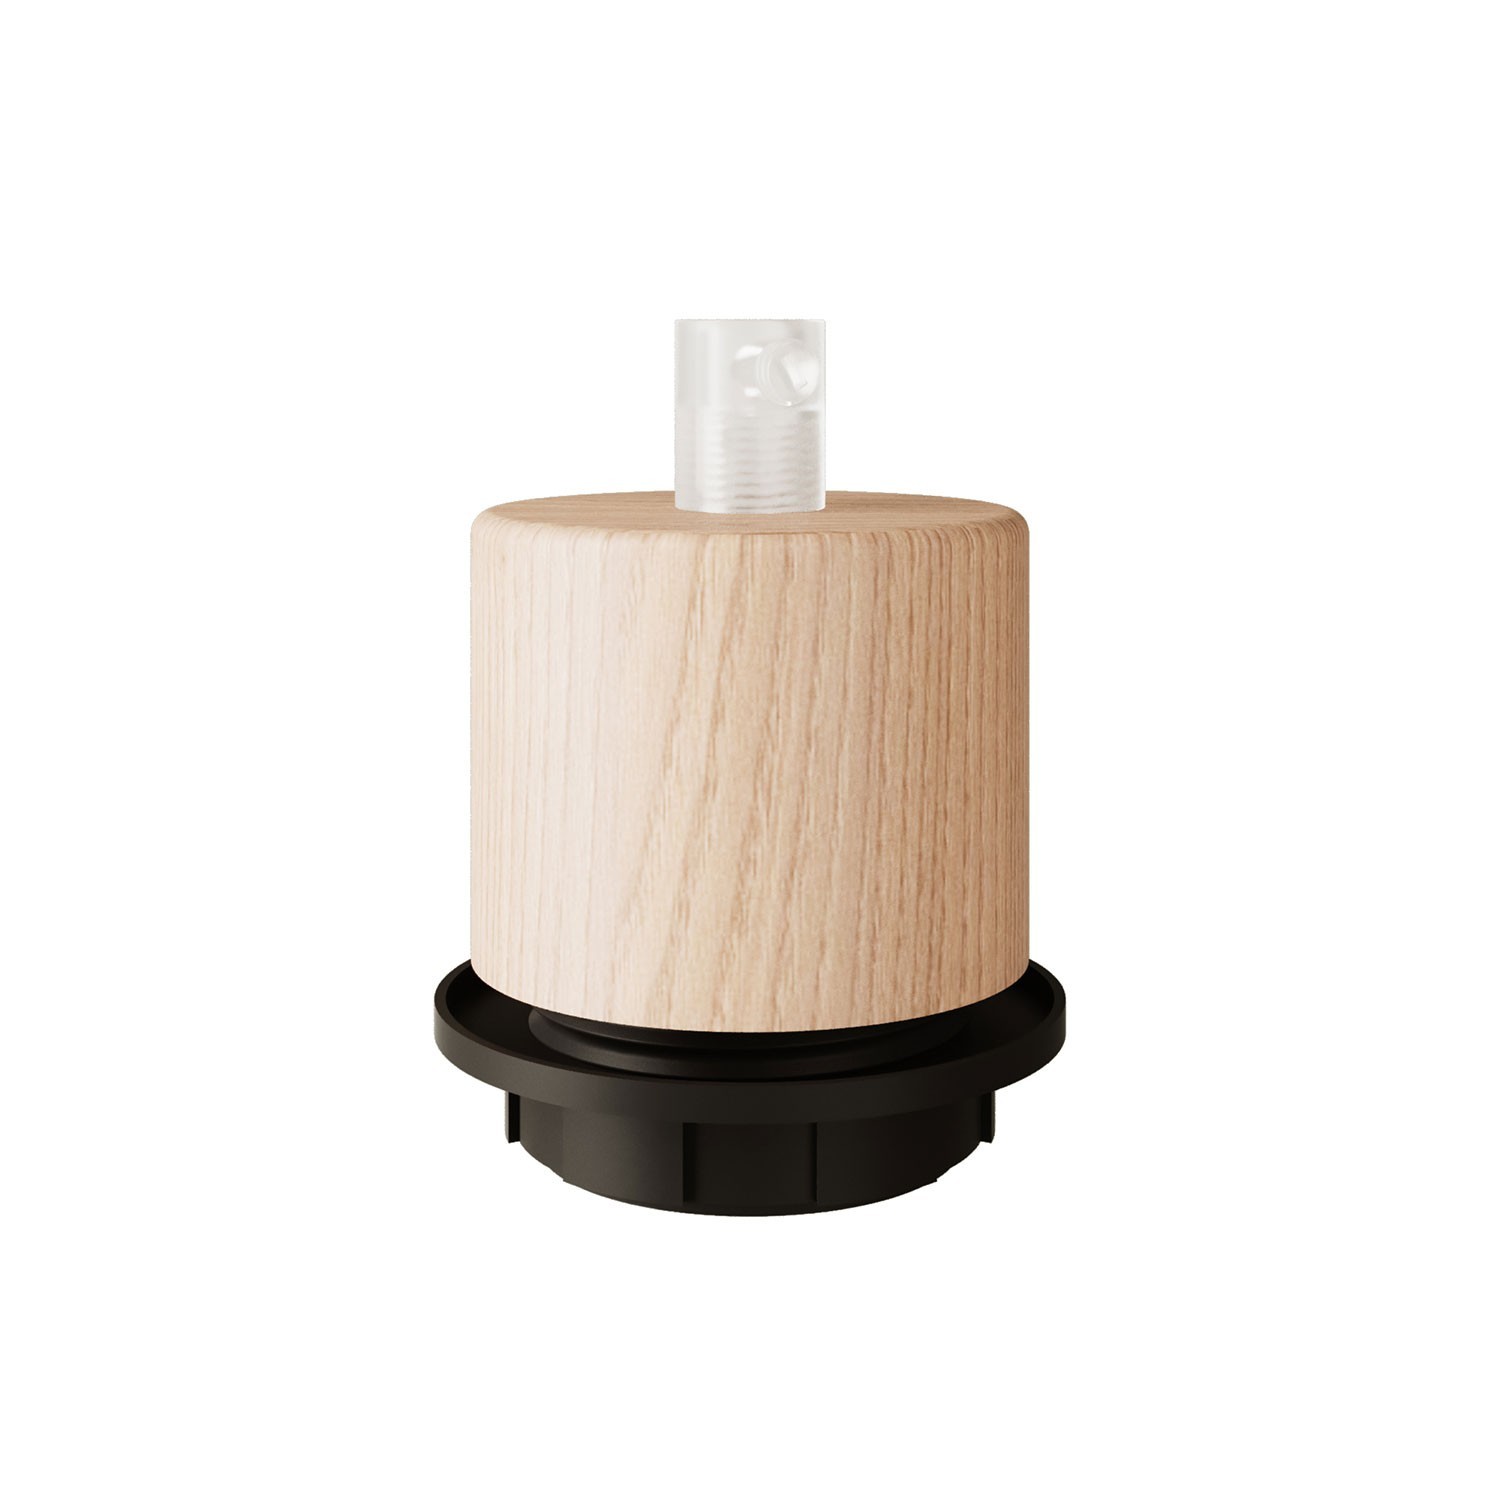 Kit zylinderförmige E27 Holz-Lampenfassung mit Gewinde und Zugentlastung für Lampenschirm